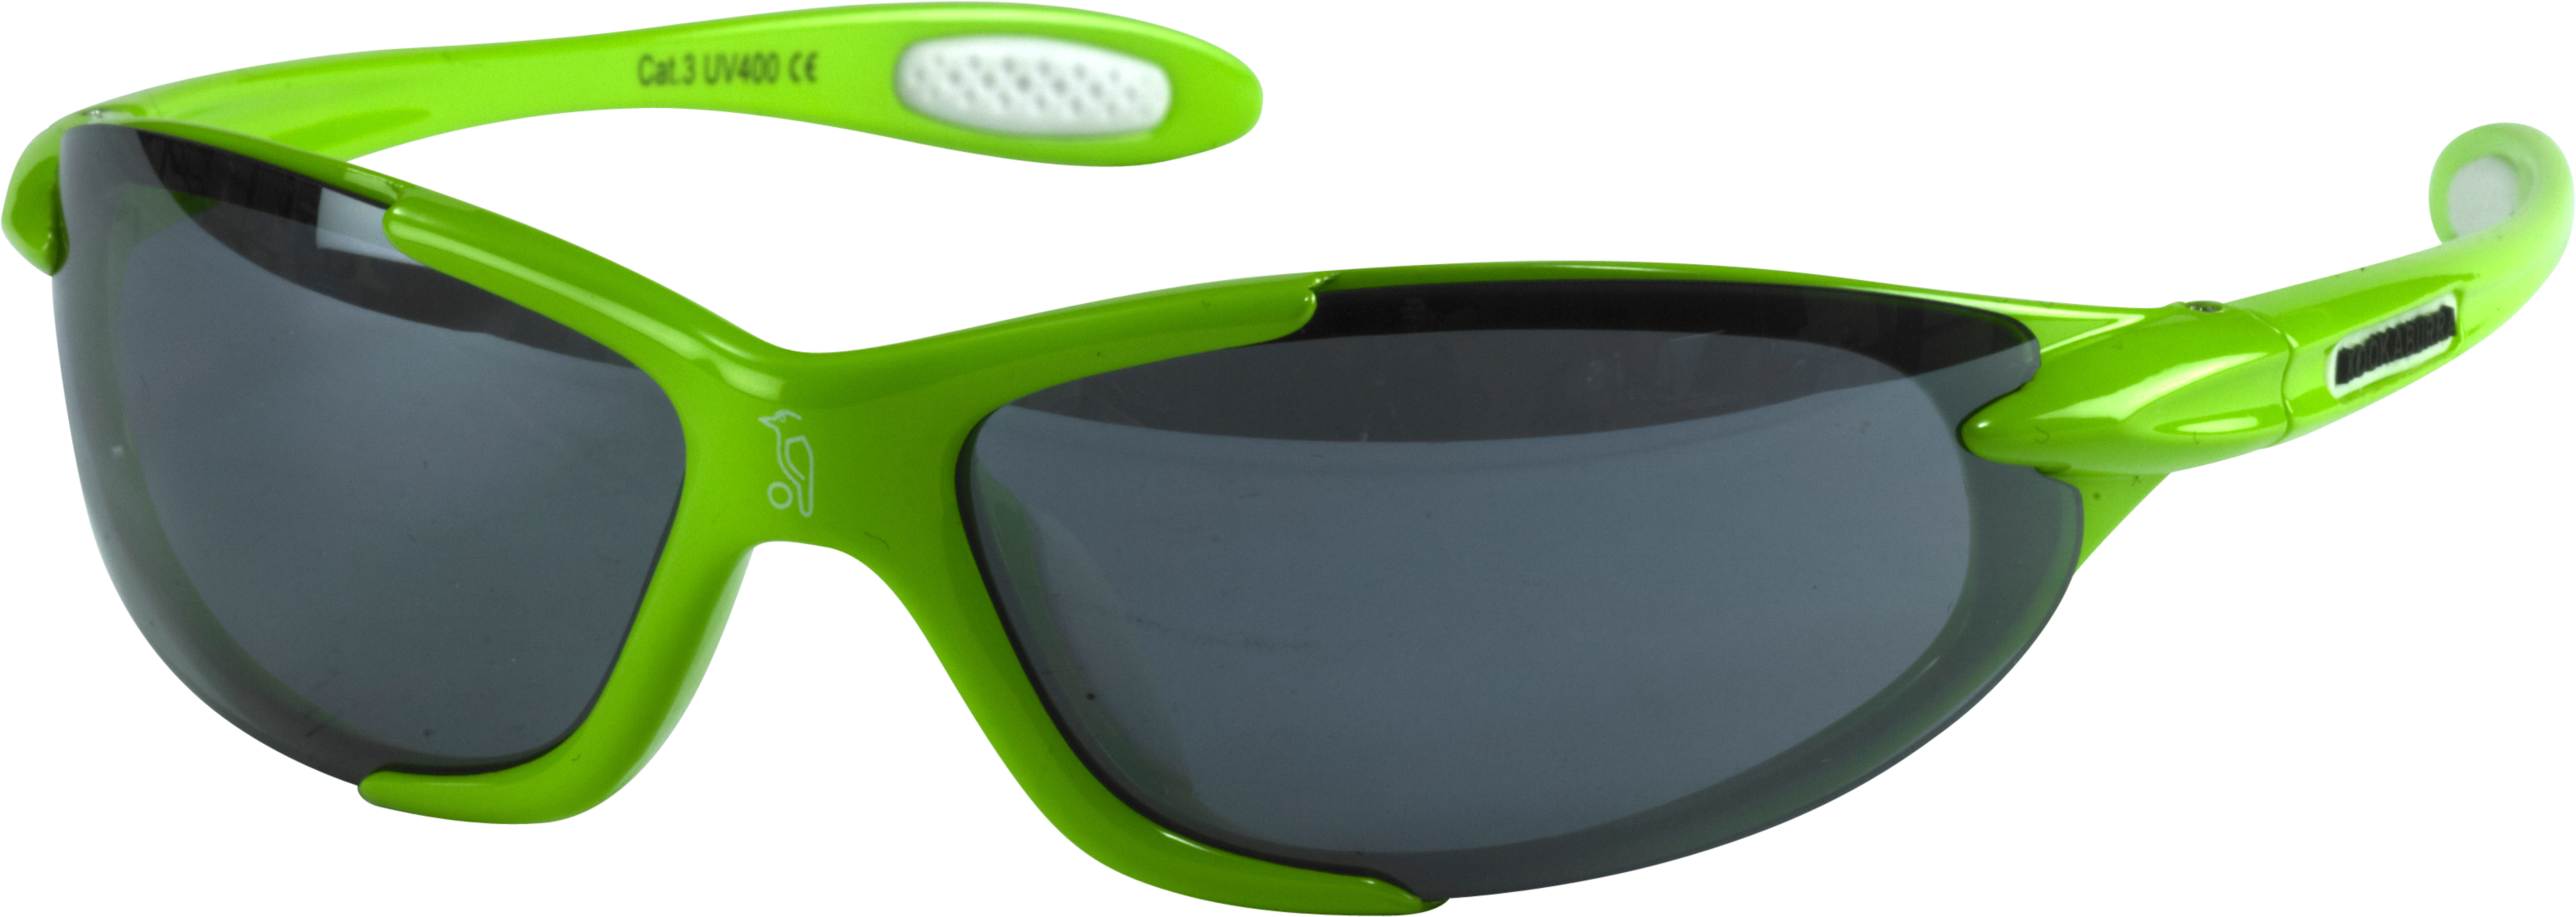 sunglasses green transparent png #10840